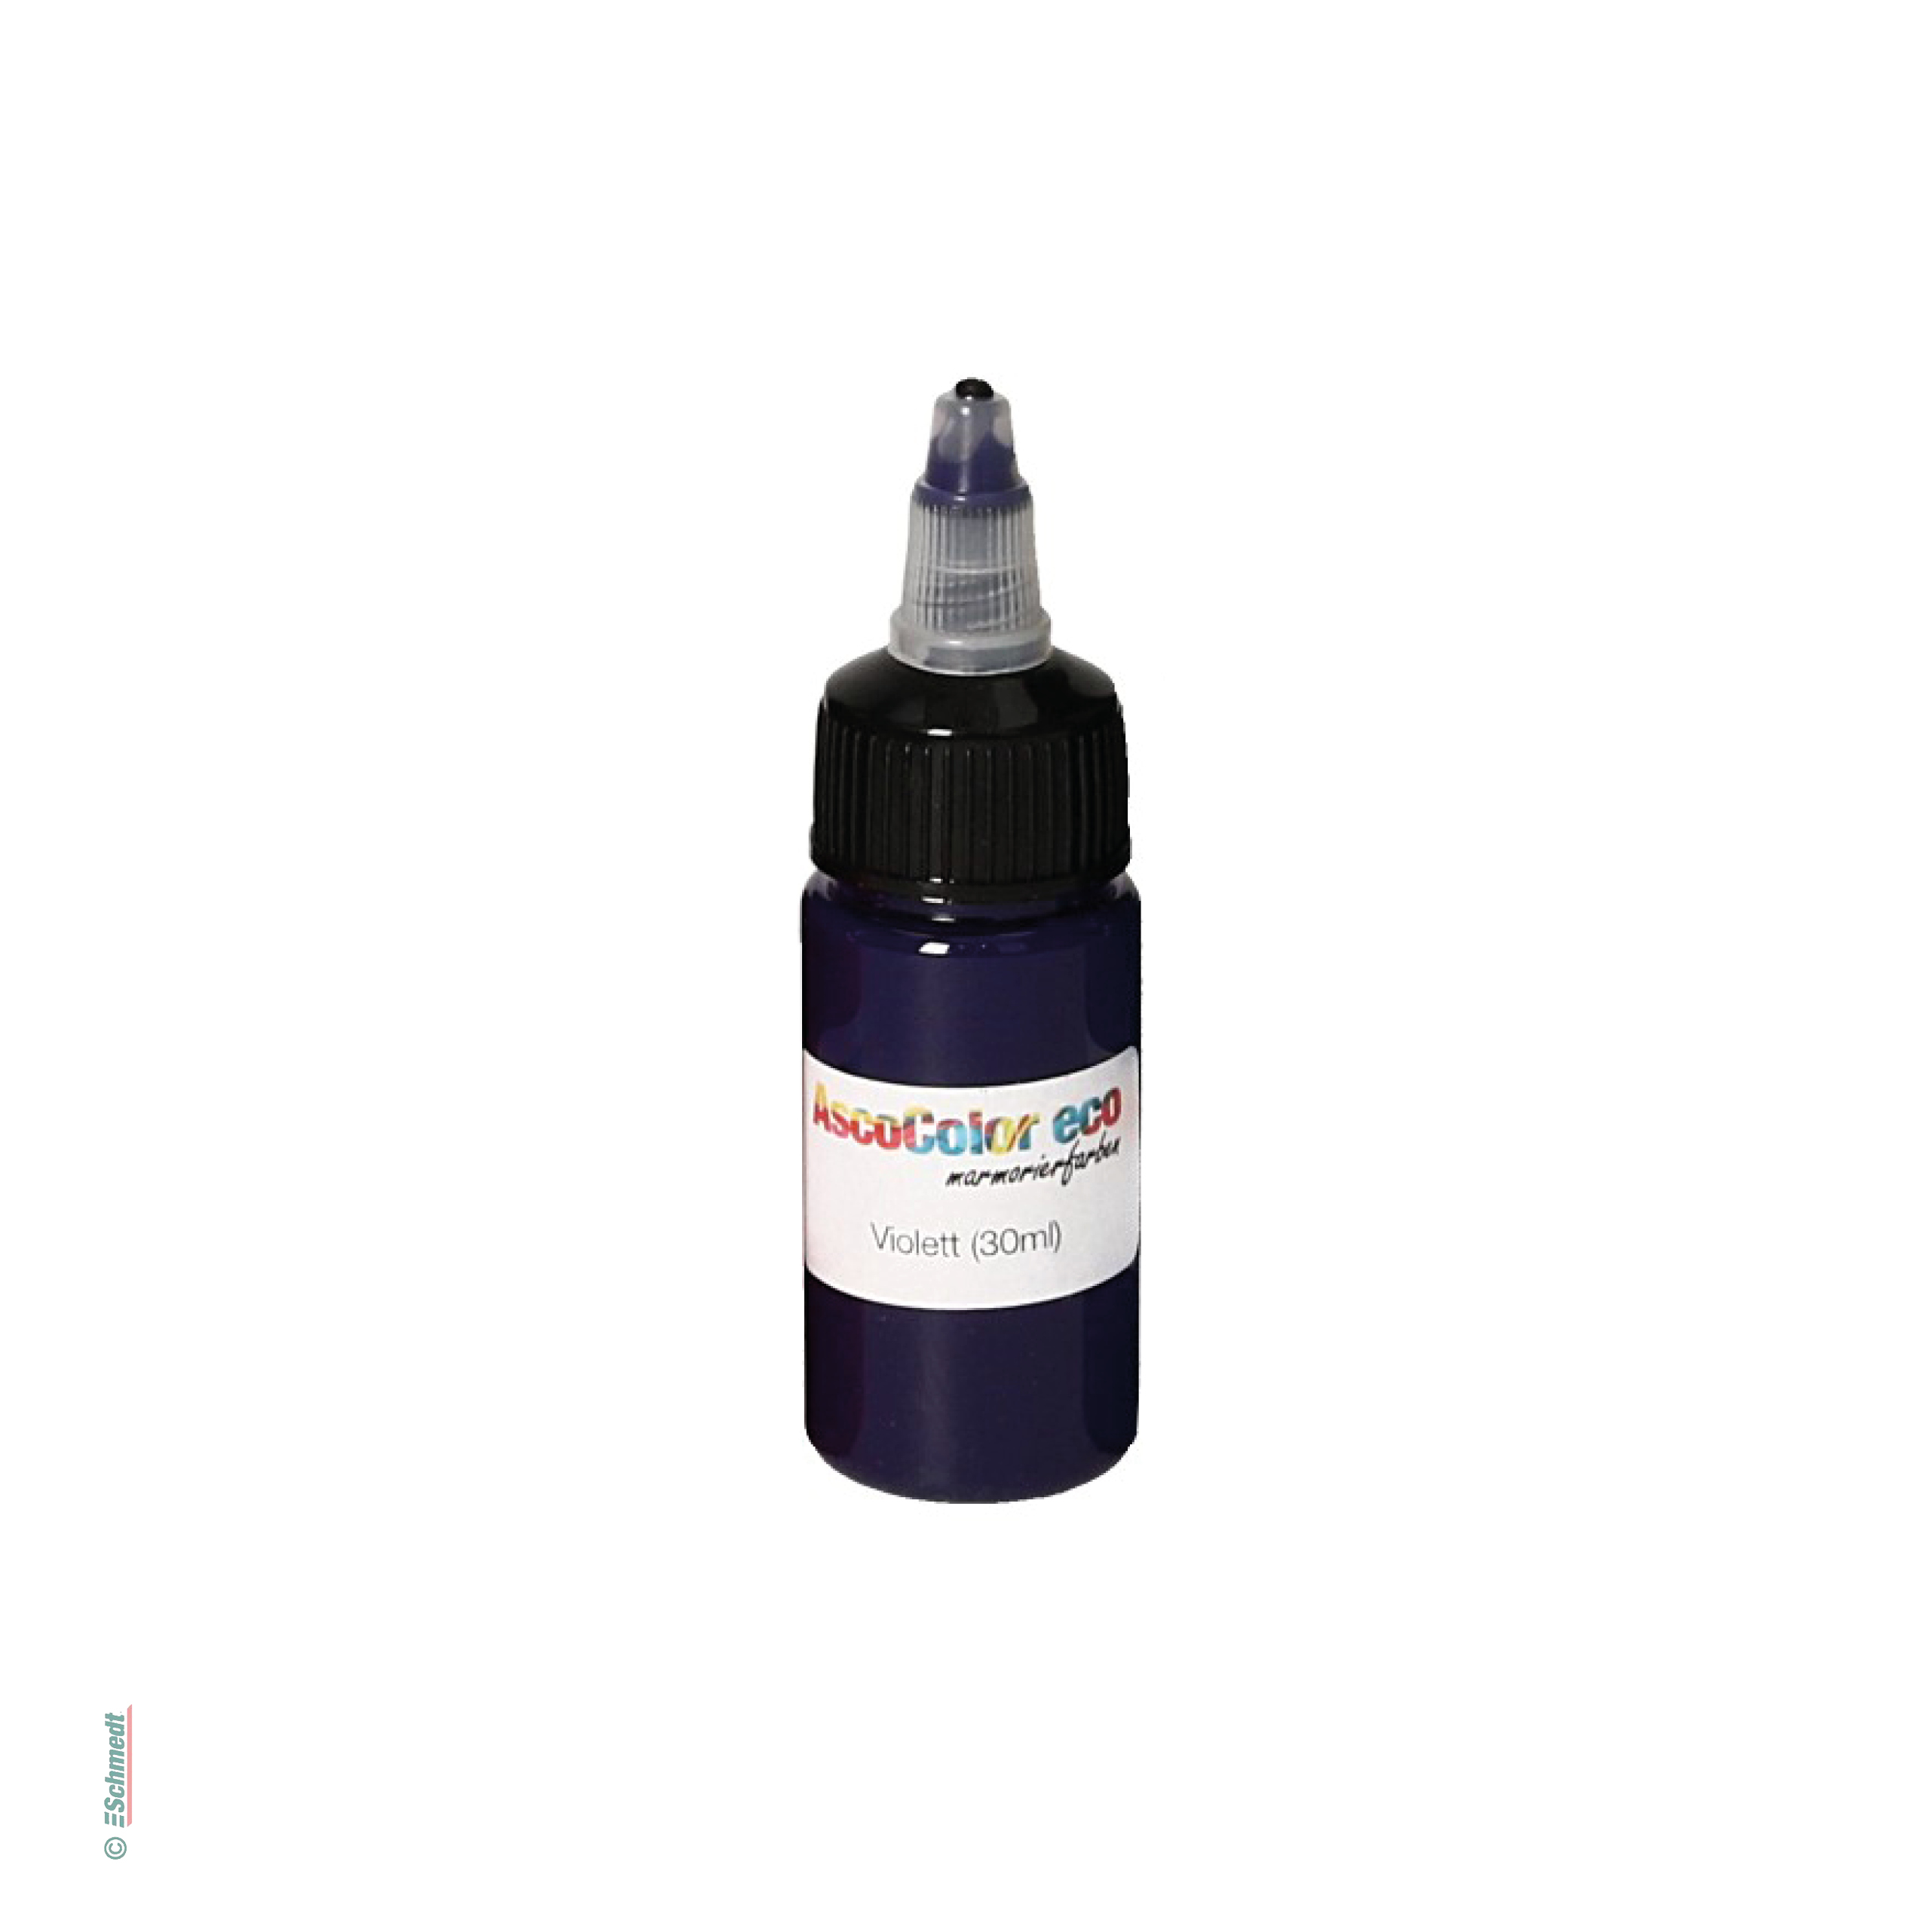 AscoColor eco - peinture à marbrer - Couleur 104 - violet - Contenu Bouteille / 30 ml - pour créér papiers marbrés...